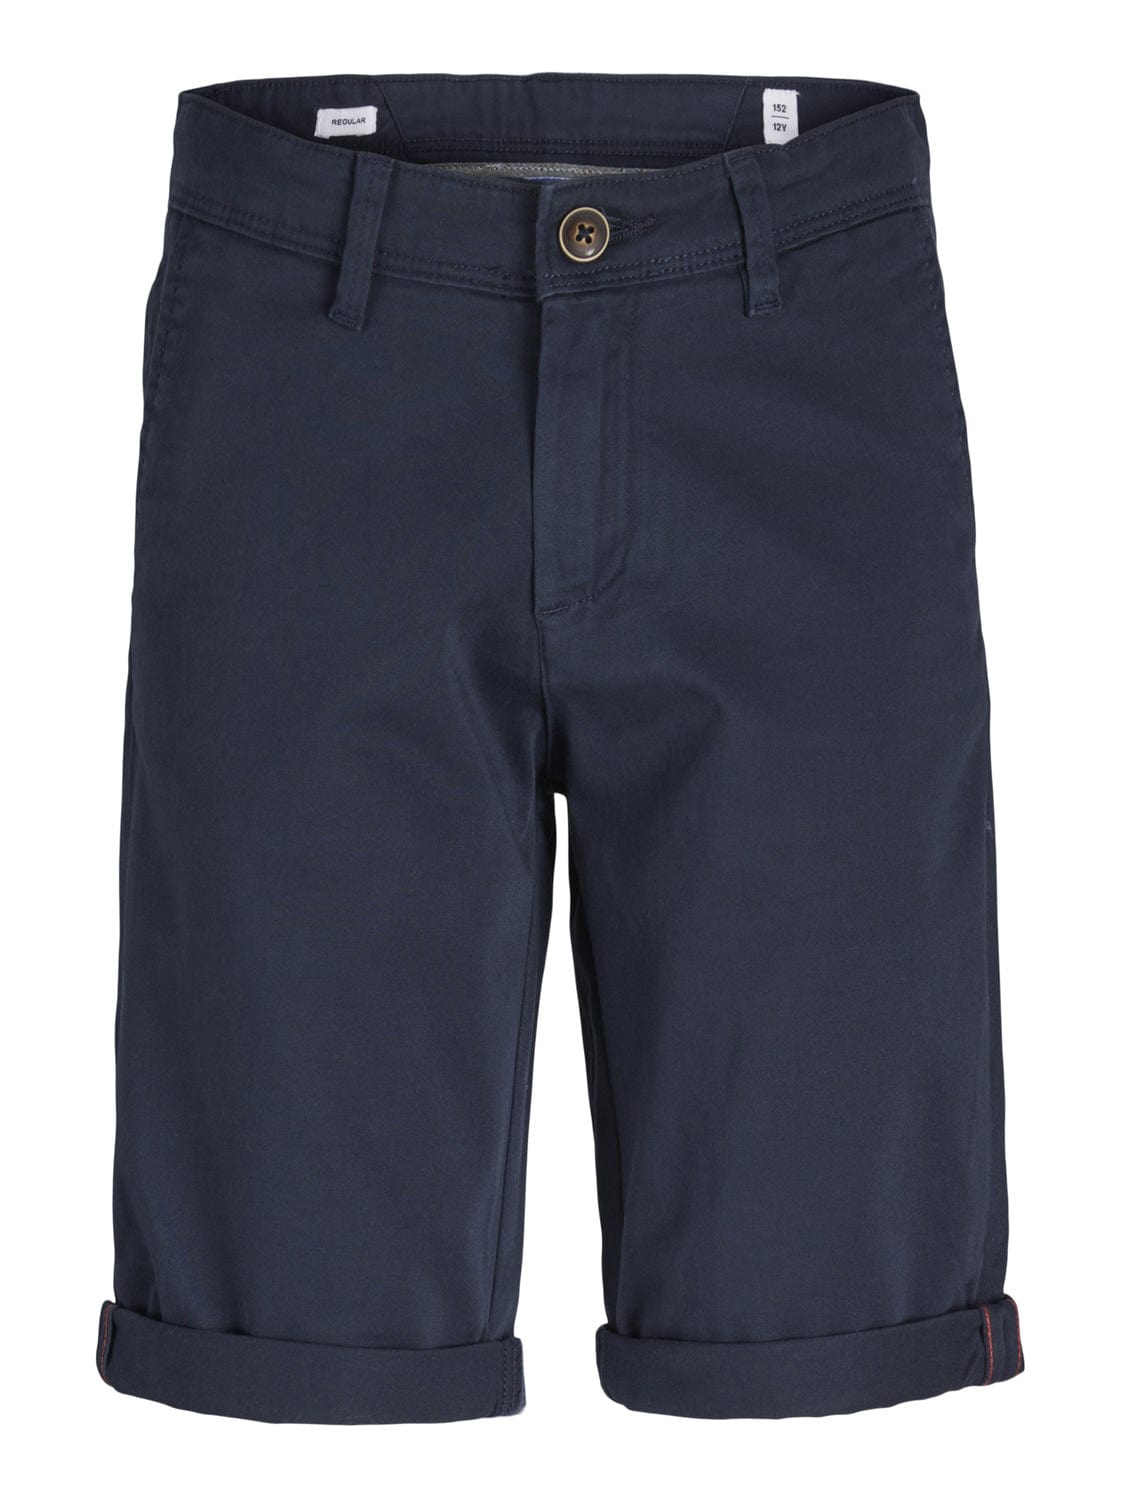 Pantalón corto azul marino - JJIBOWIE